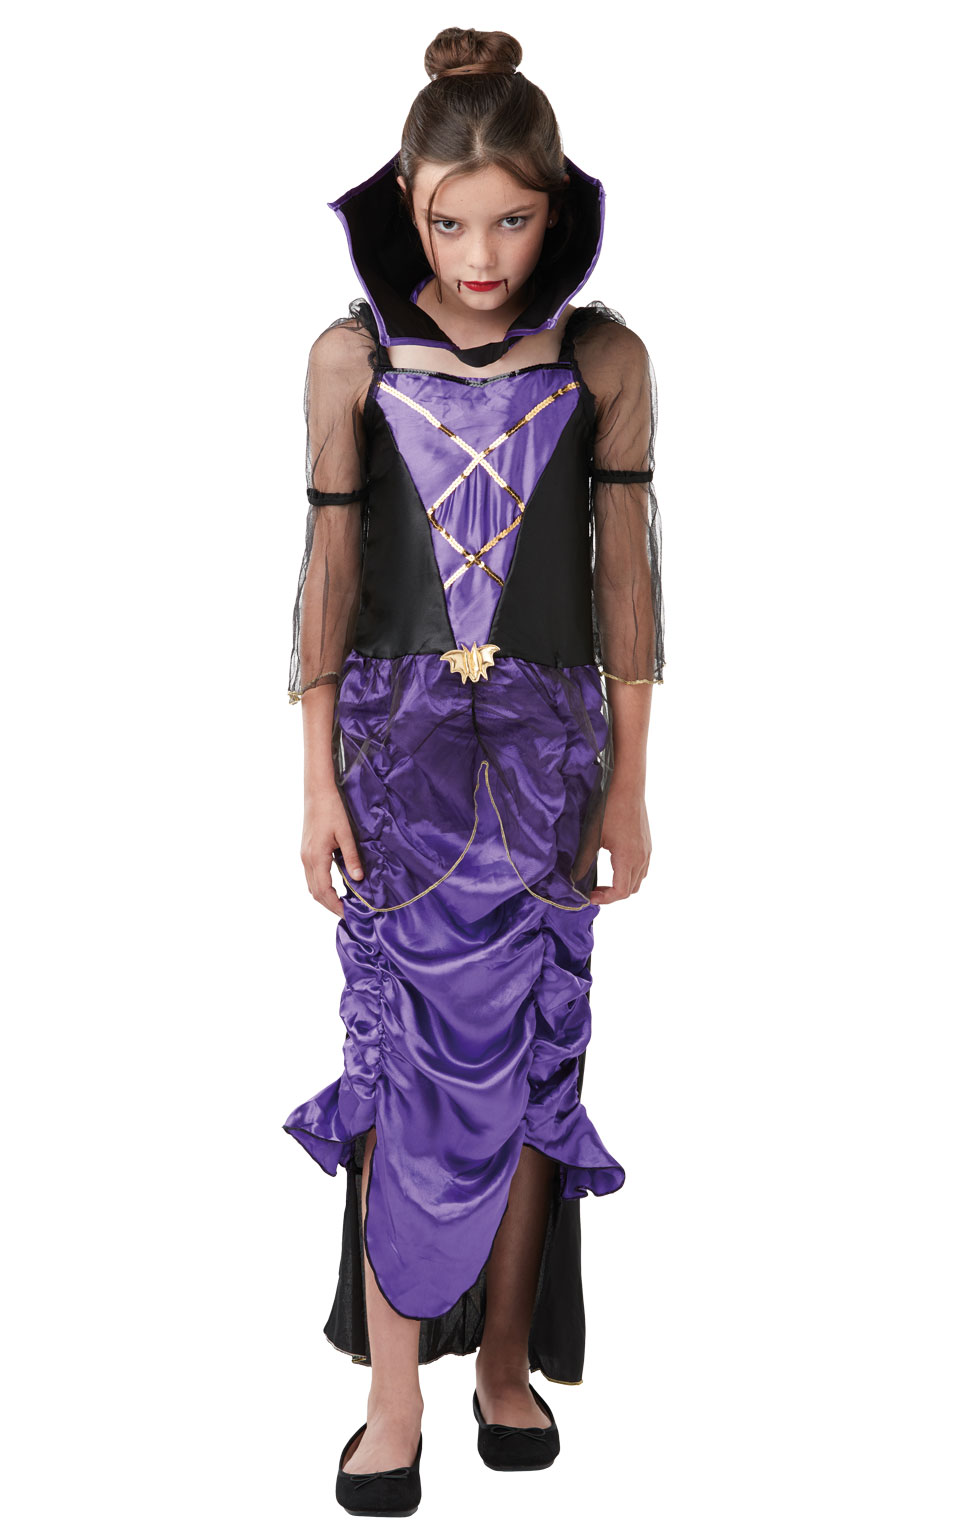 Jeg har en engelskundervisning nedadgående Relativ størrelse Gothic Vampyr Lilla Kappe Halloween udklædning til børn Kr. 149 - på lager  til omgående levering